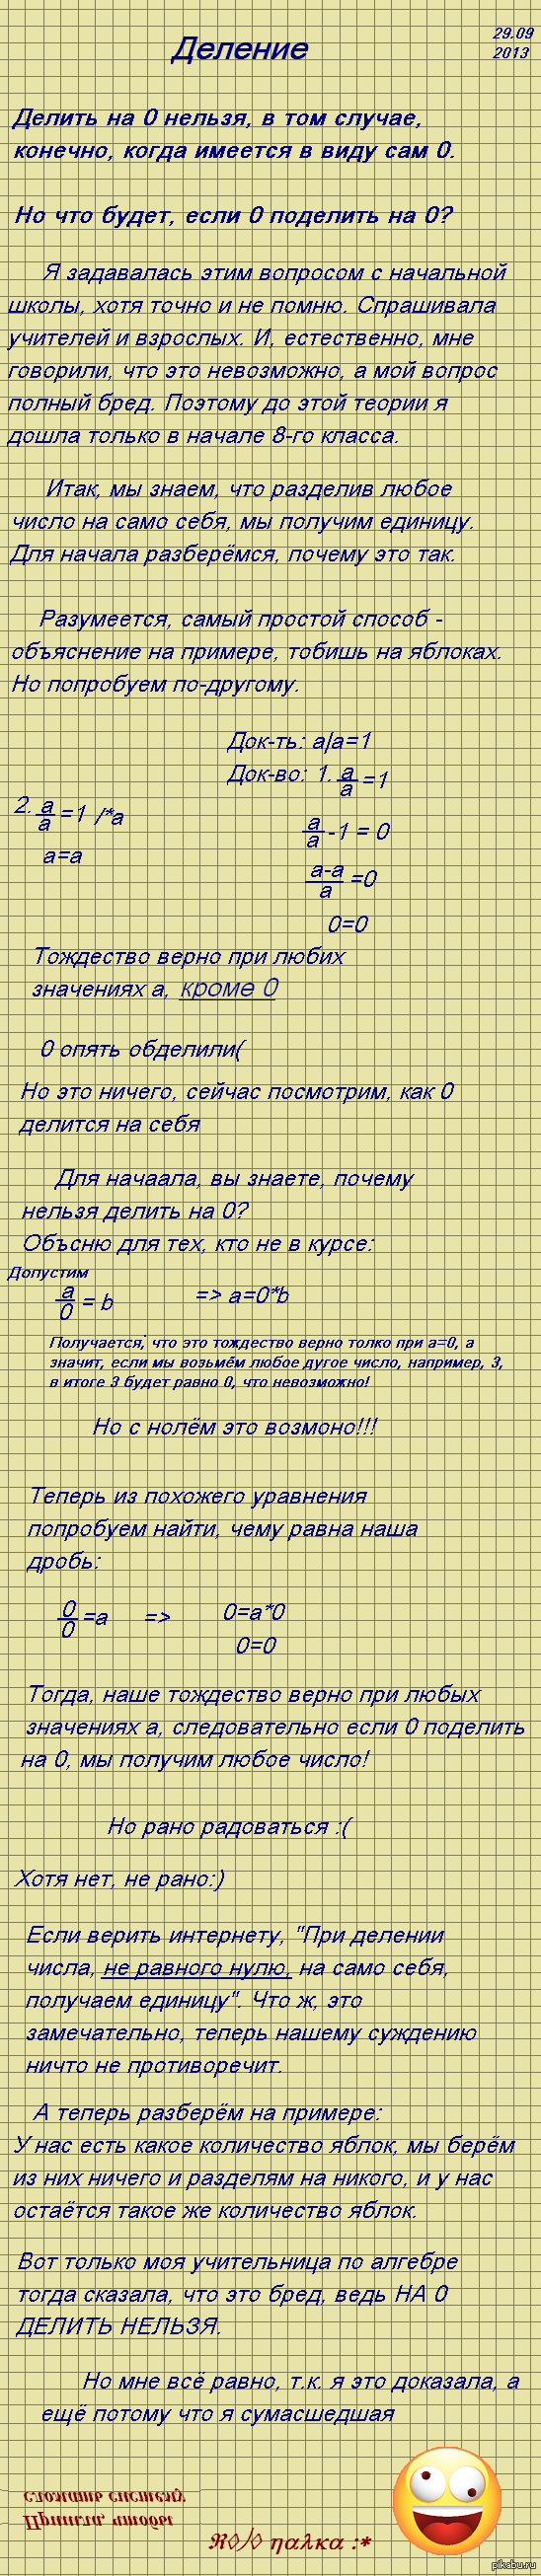  ,  0   0? ,    <a href="http://pikabu.ru/story/na_temu_spoylerov_1586380">http://pikabu.ru/story/_1586380</a>